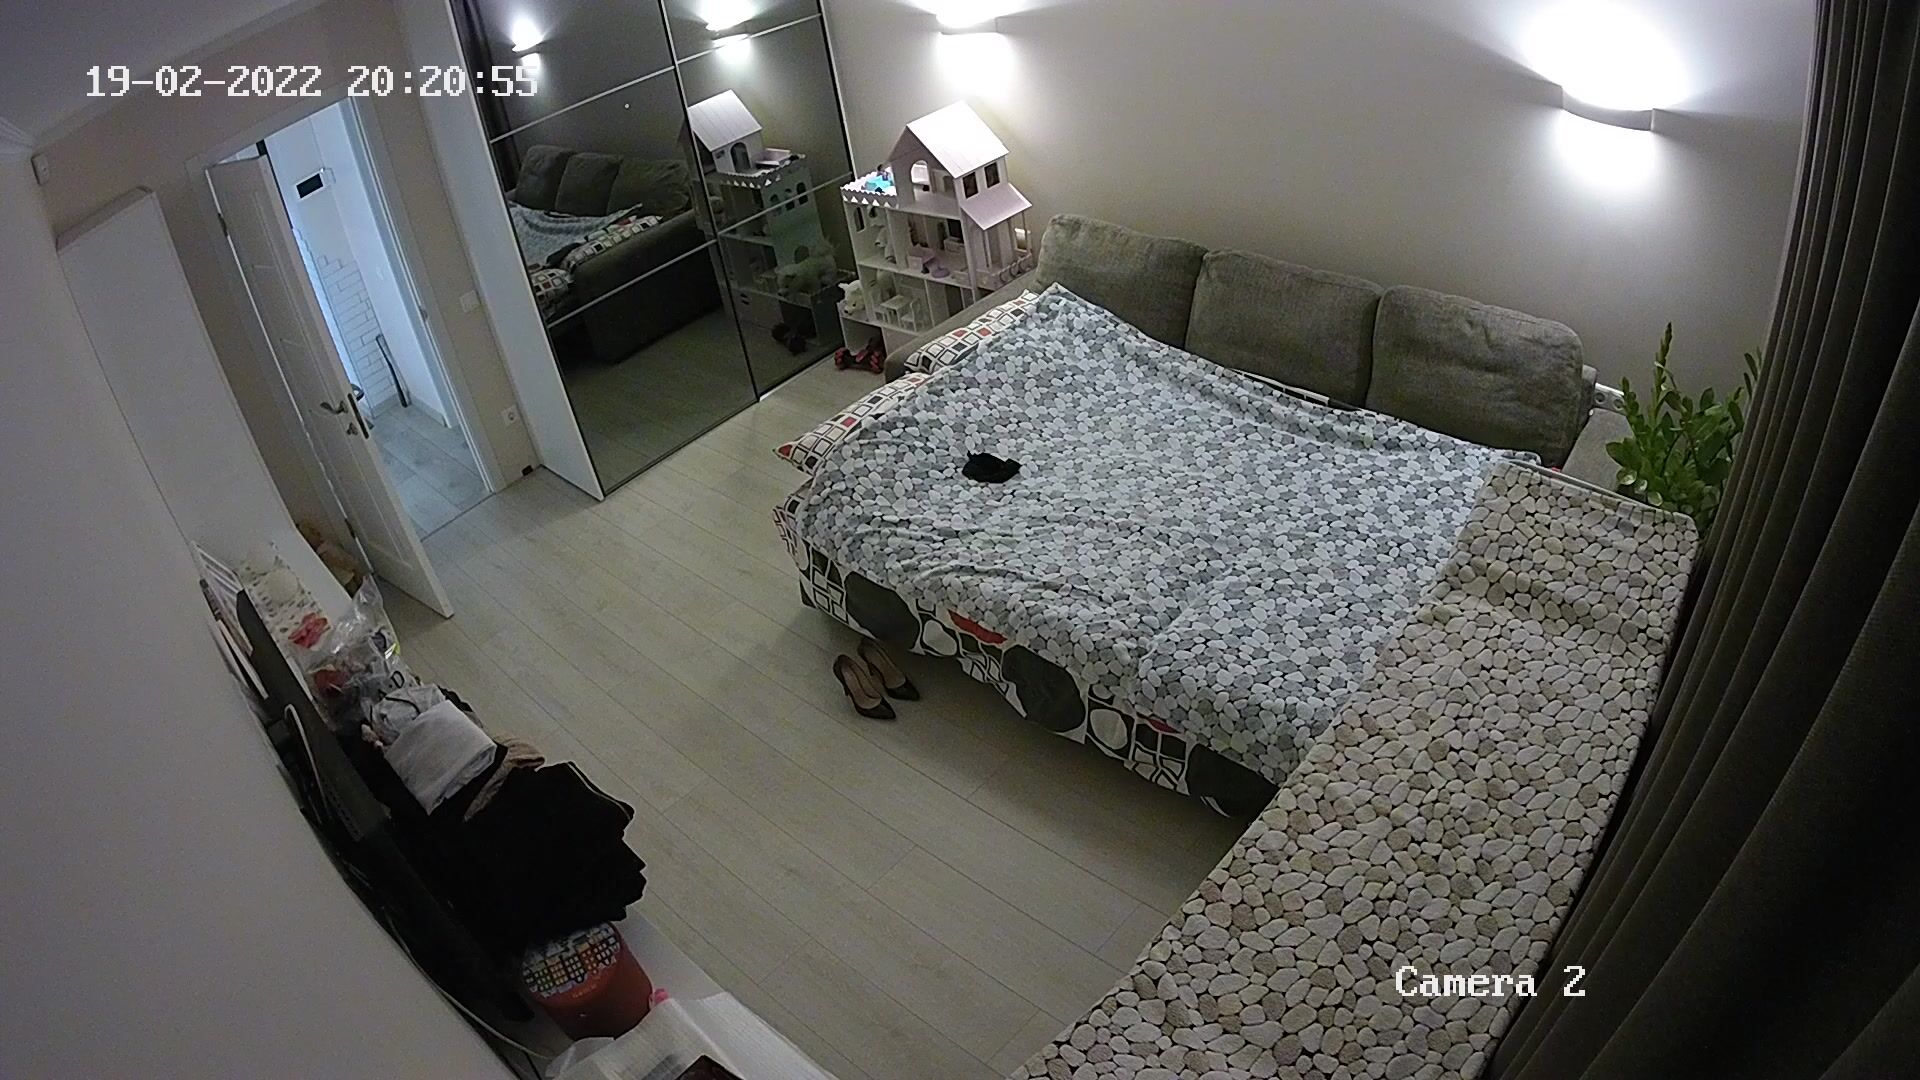 Live voyeur apartment cams